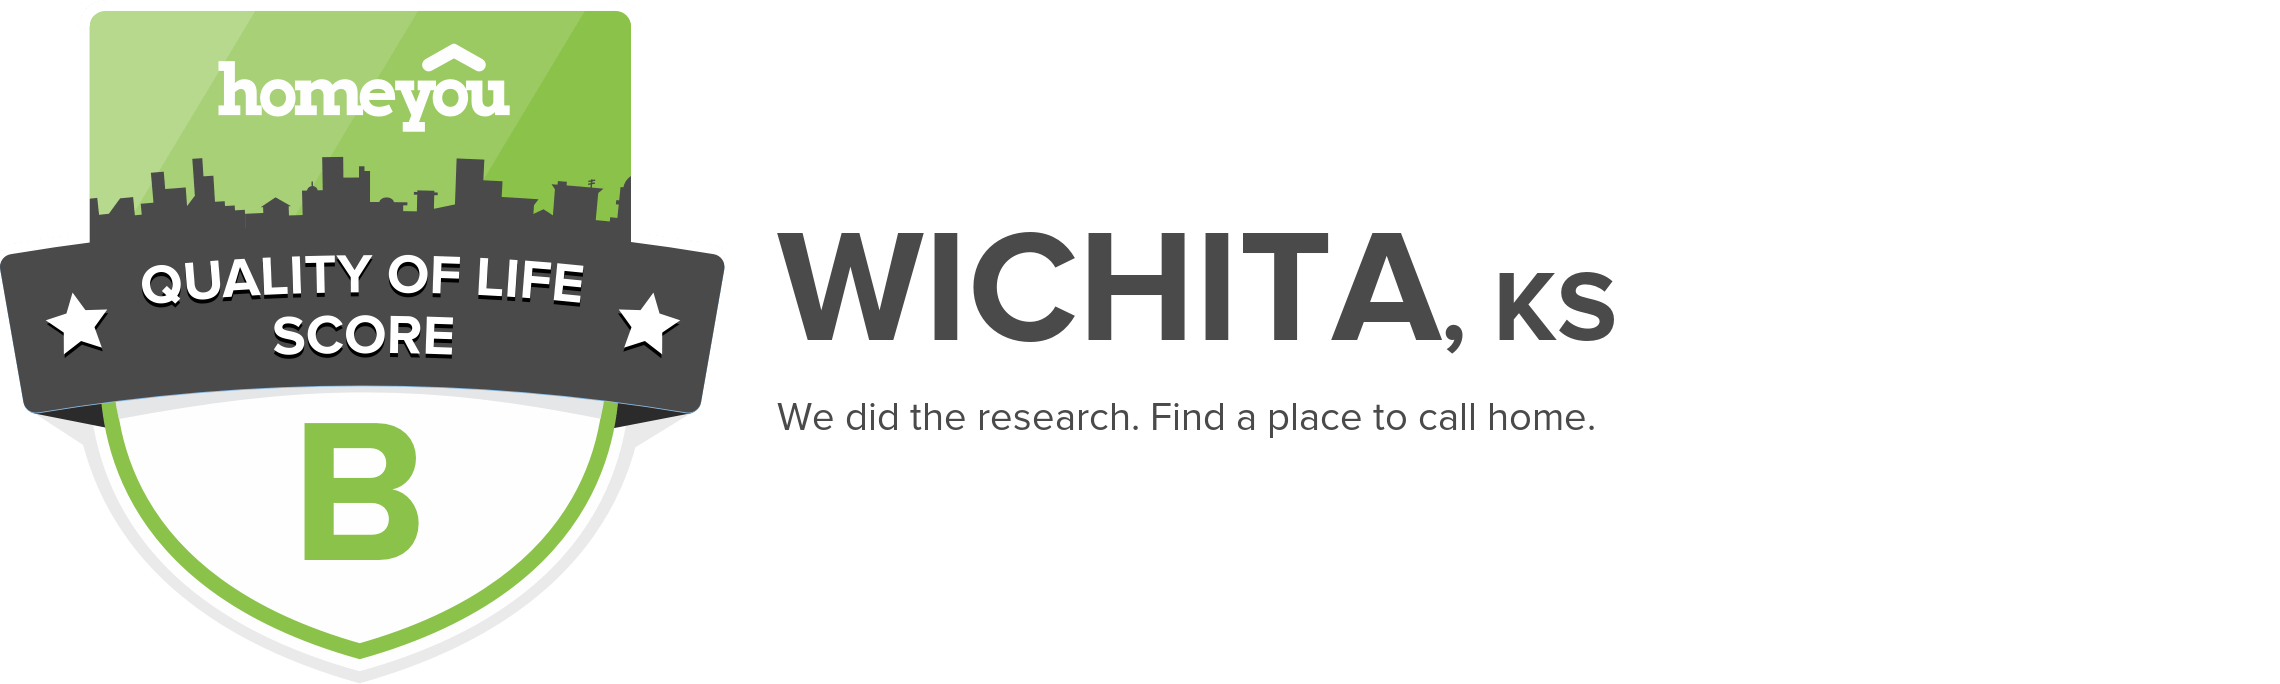 Wichita, KS